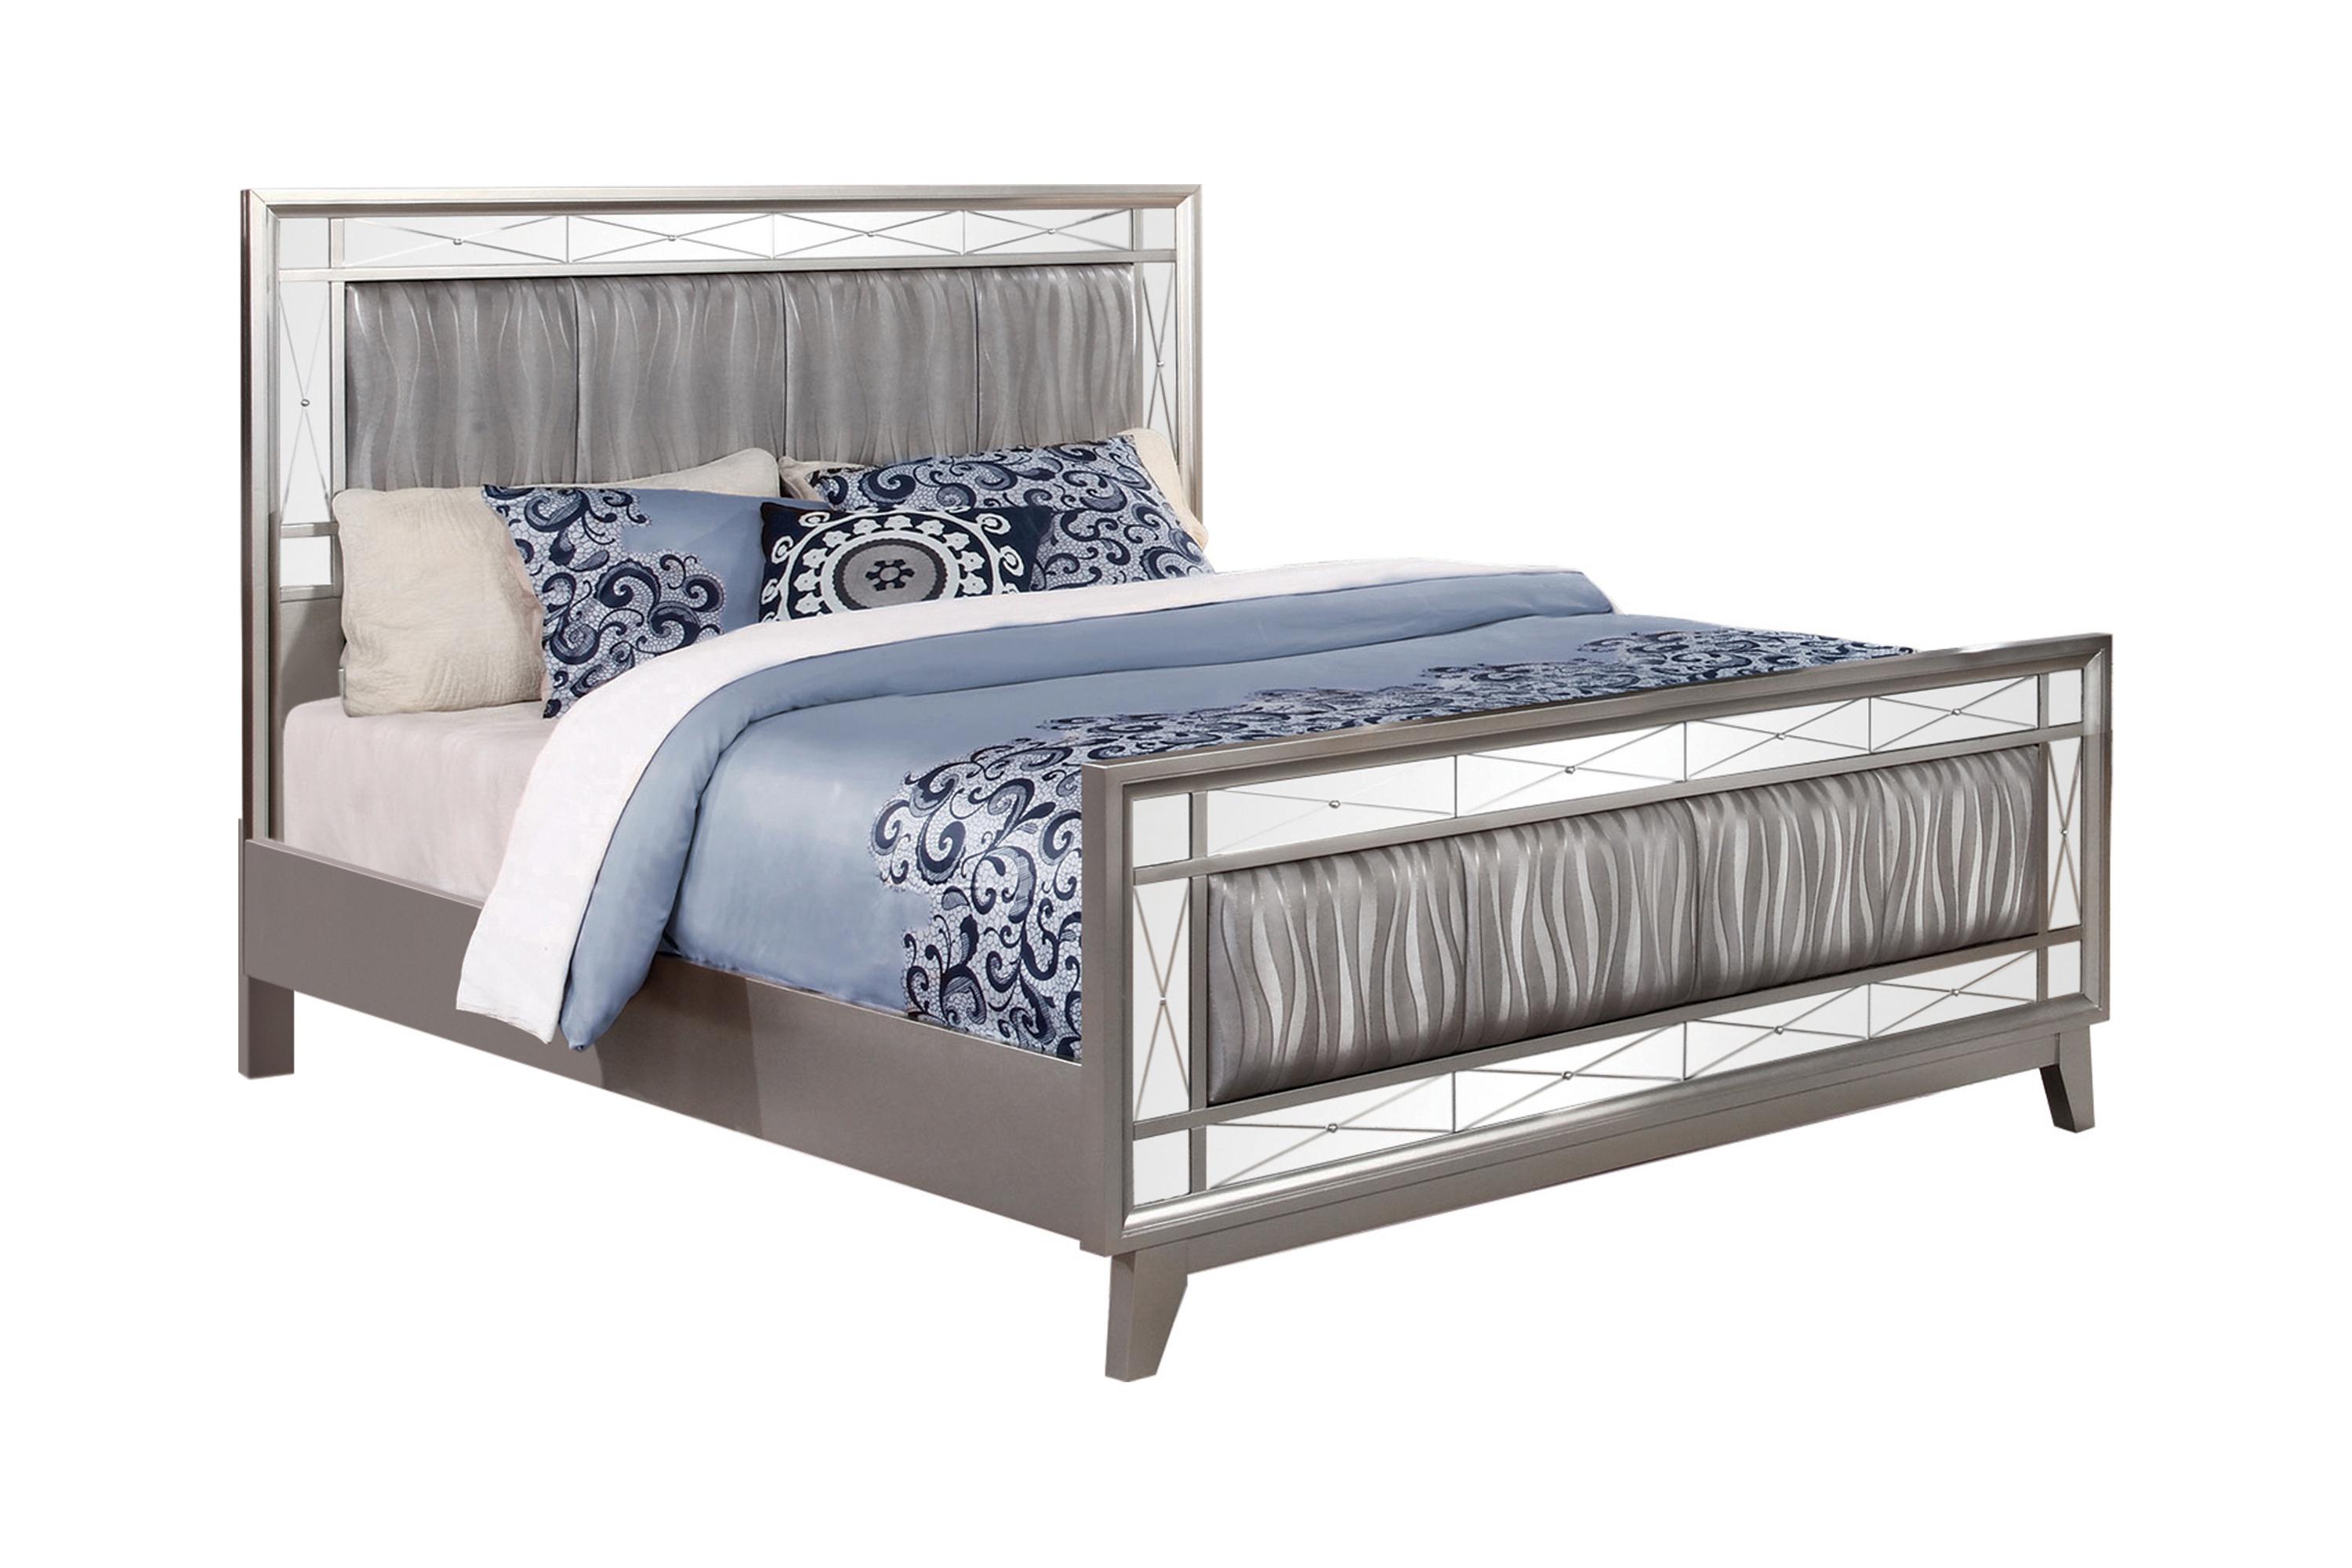 

    
Glam Metallic Mercury Solid Wood Full Bedroom Set 3pcs Coaster 204921F Leighton
